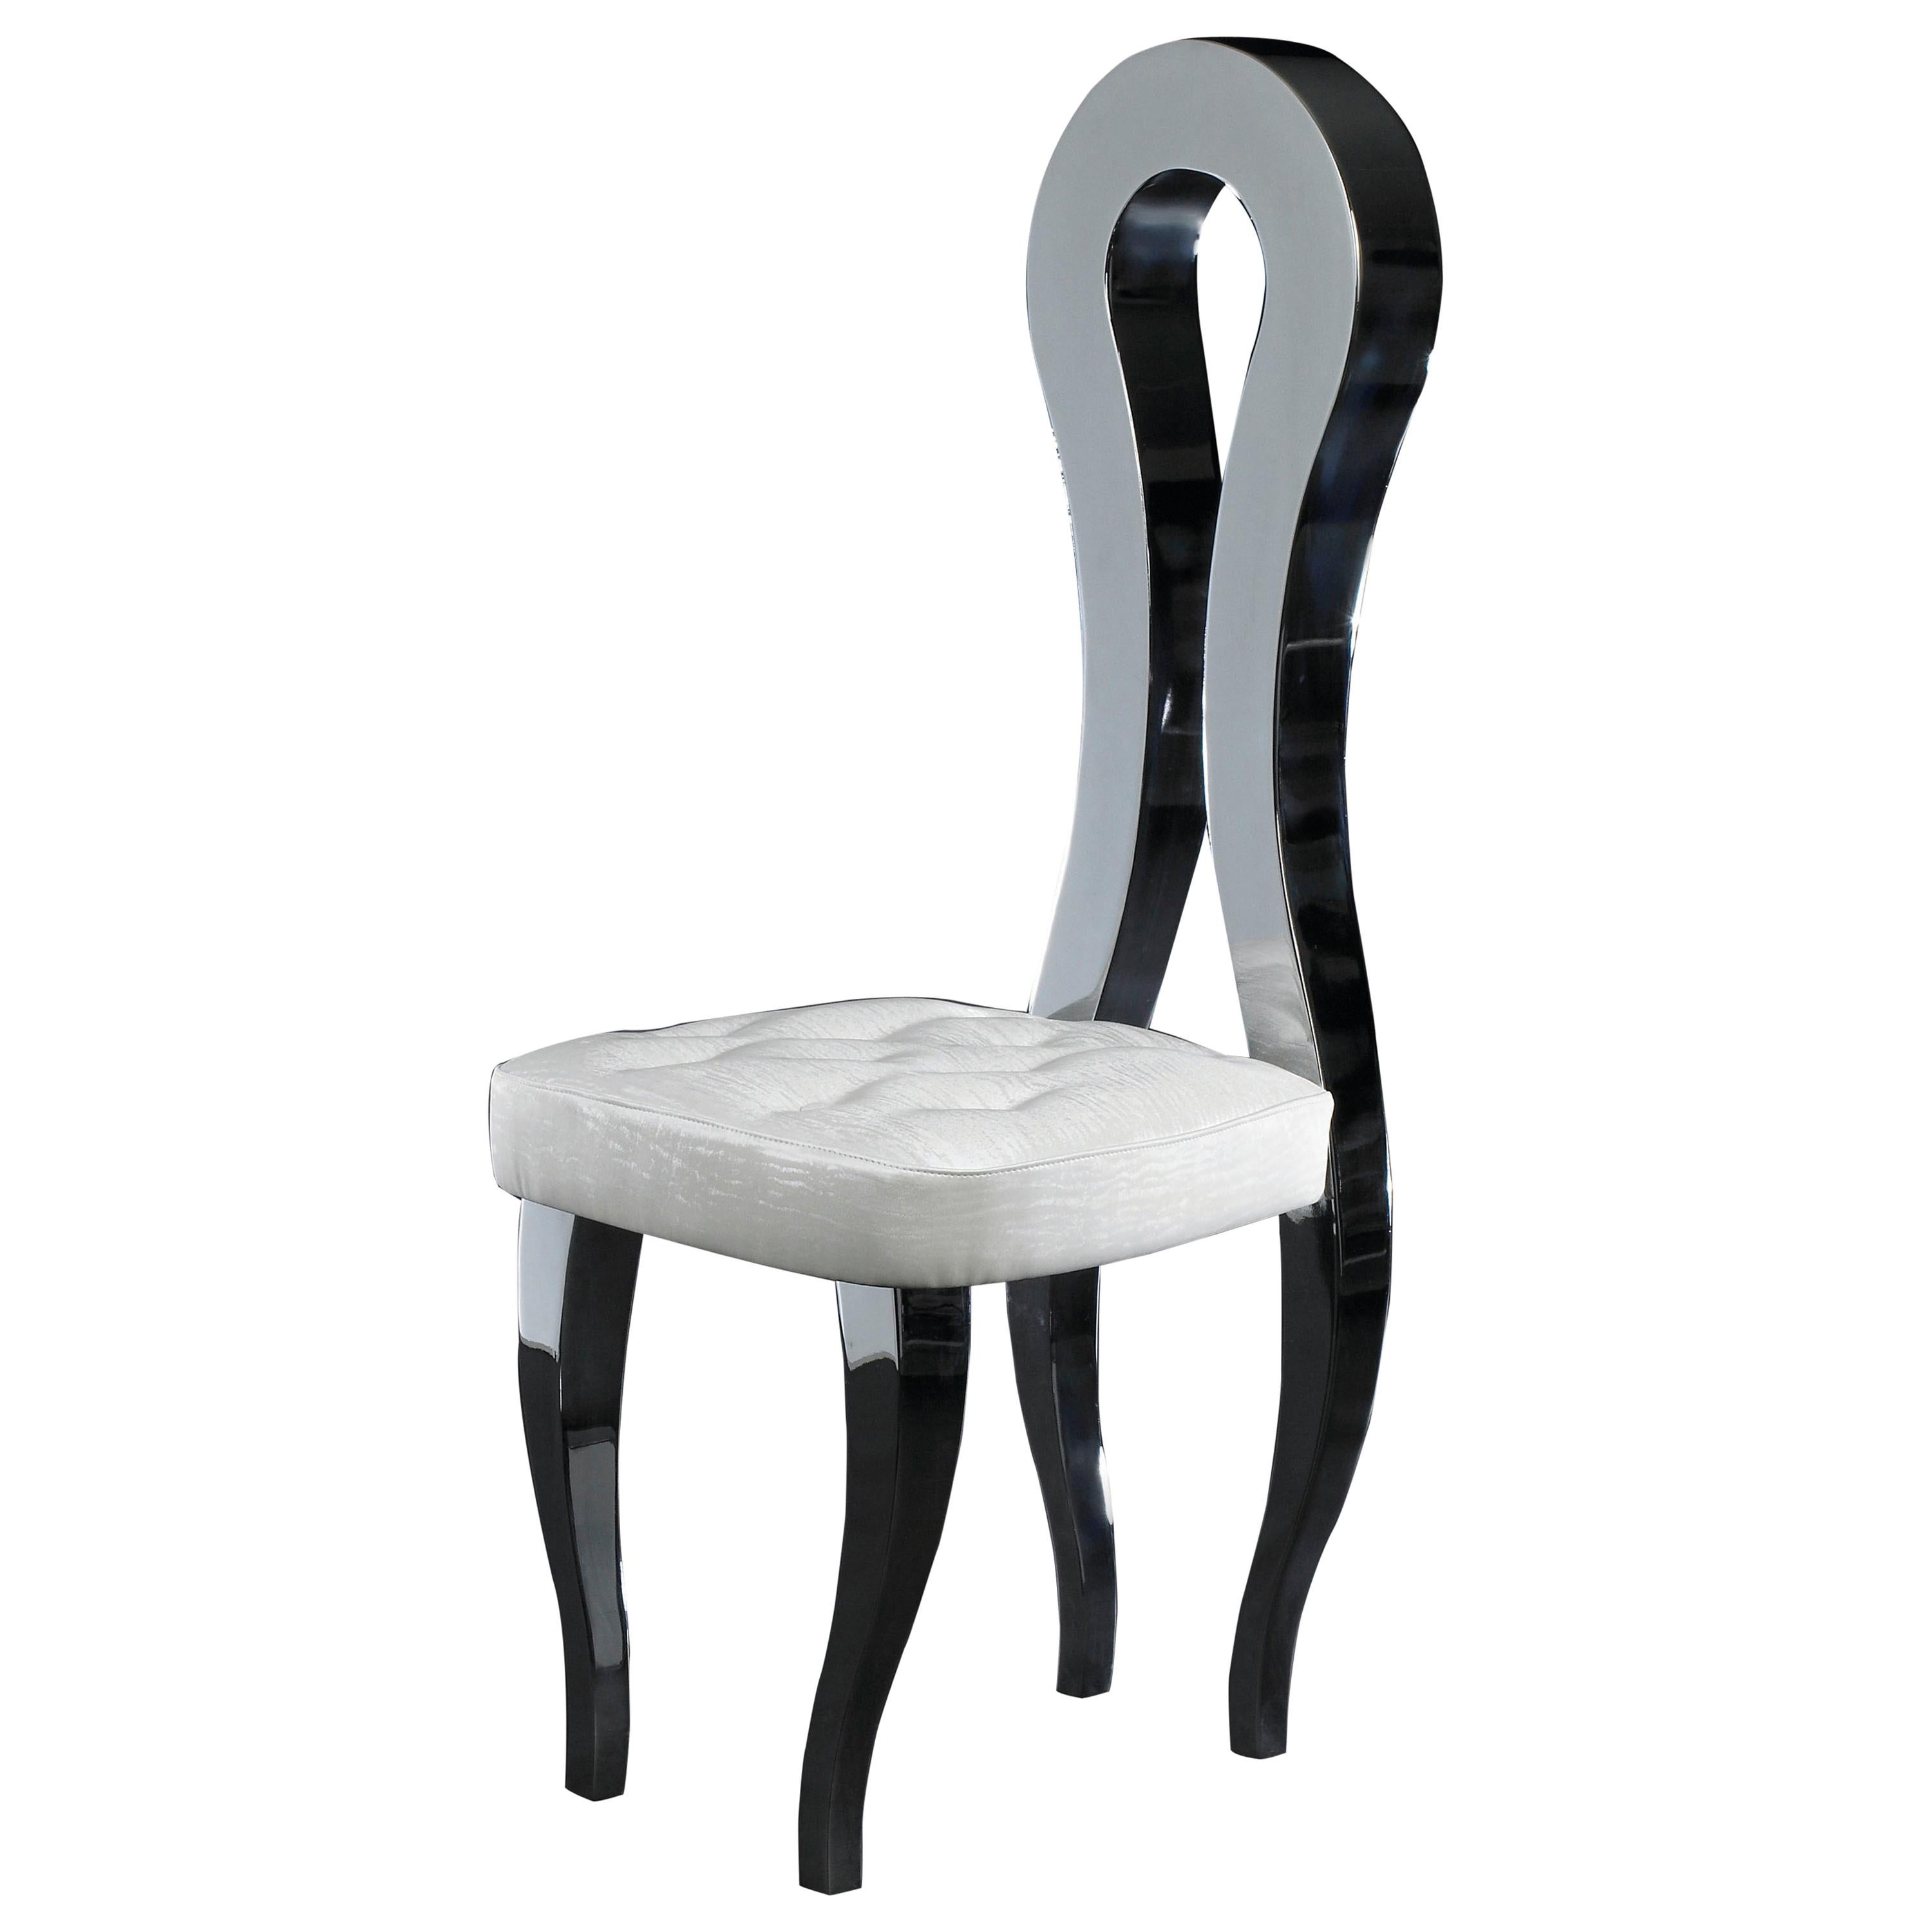 Silhouette de la chaise, faux cuir blanc, mobilier, Italie